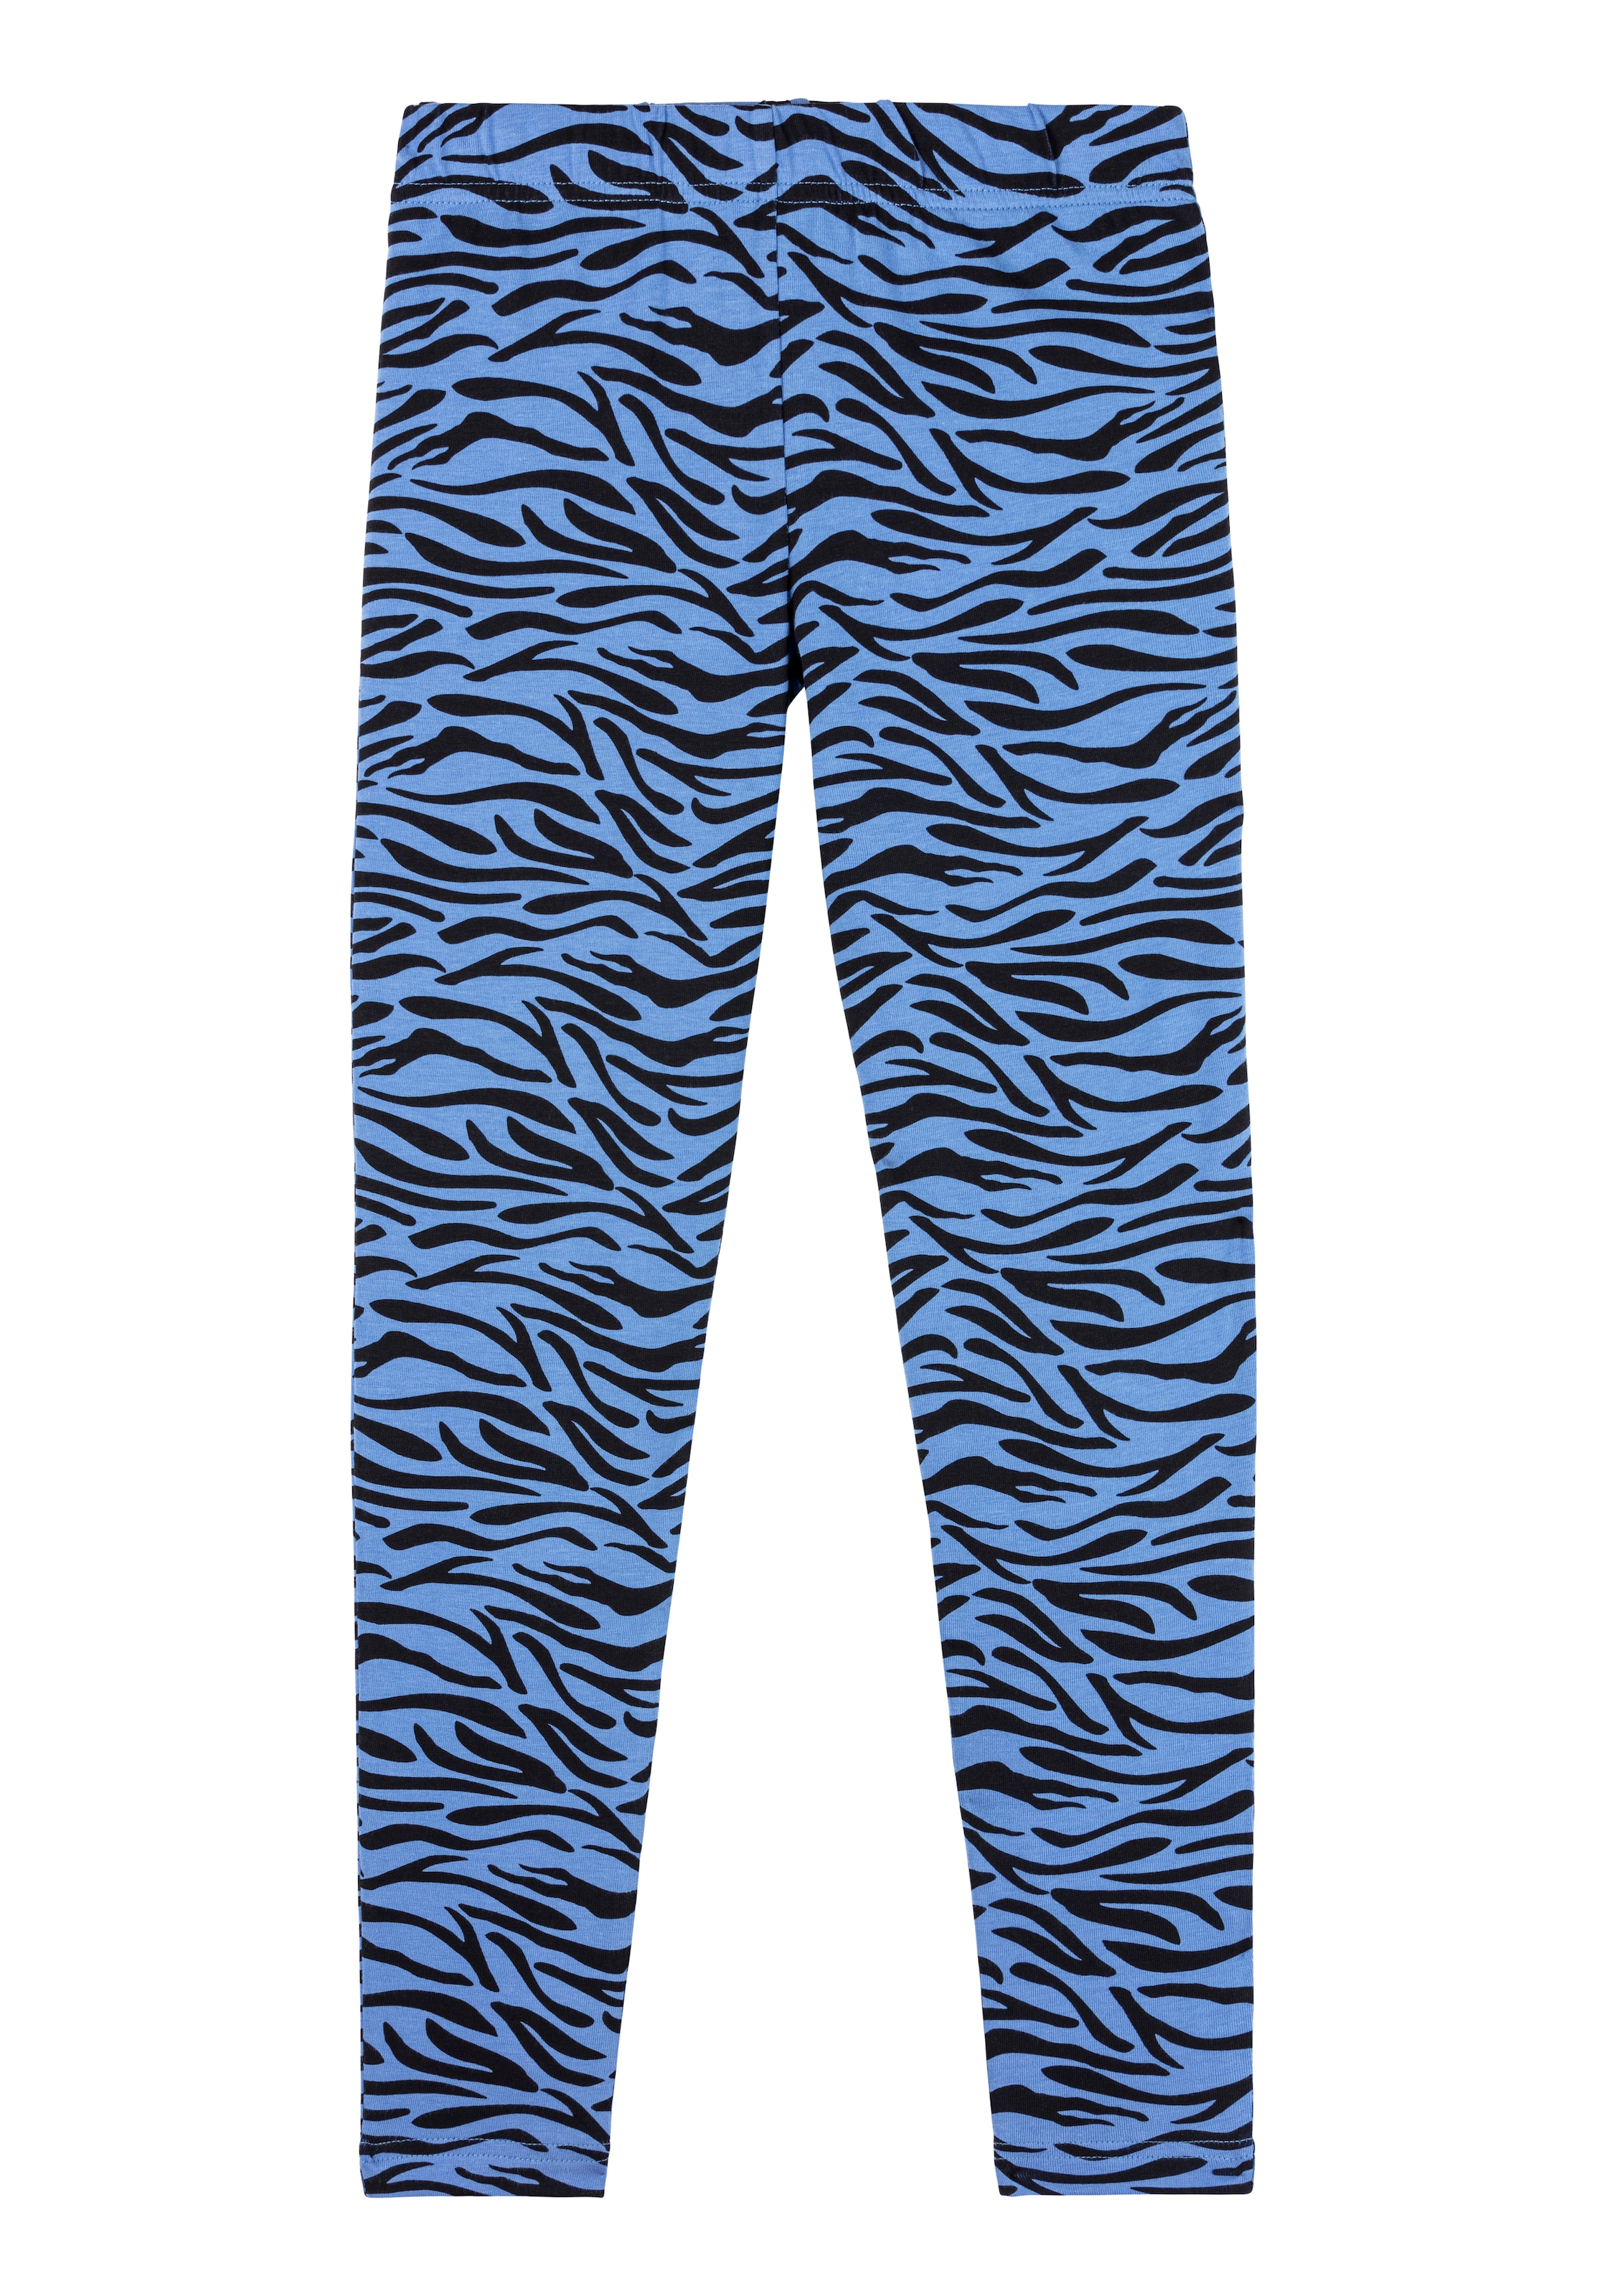 Pyjama, mit Stück), kaufen (2 Buffalo Zebra-Muster tlg., 1 online